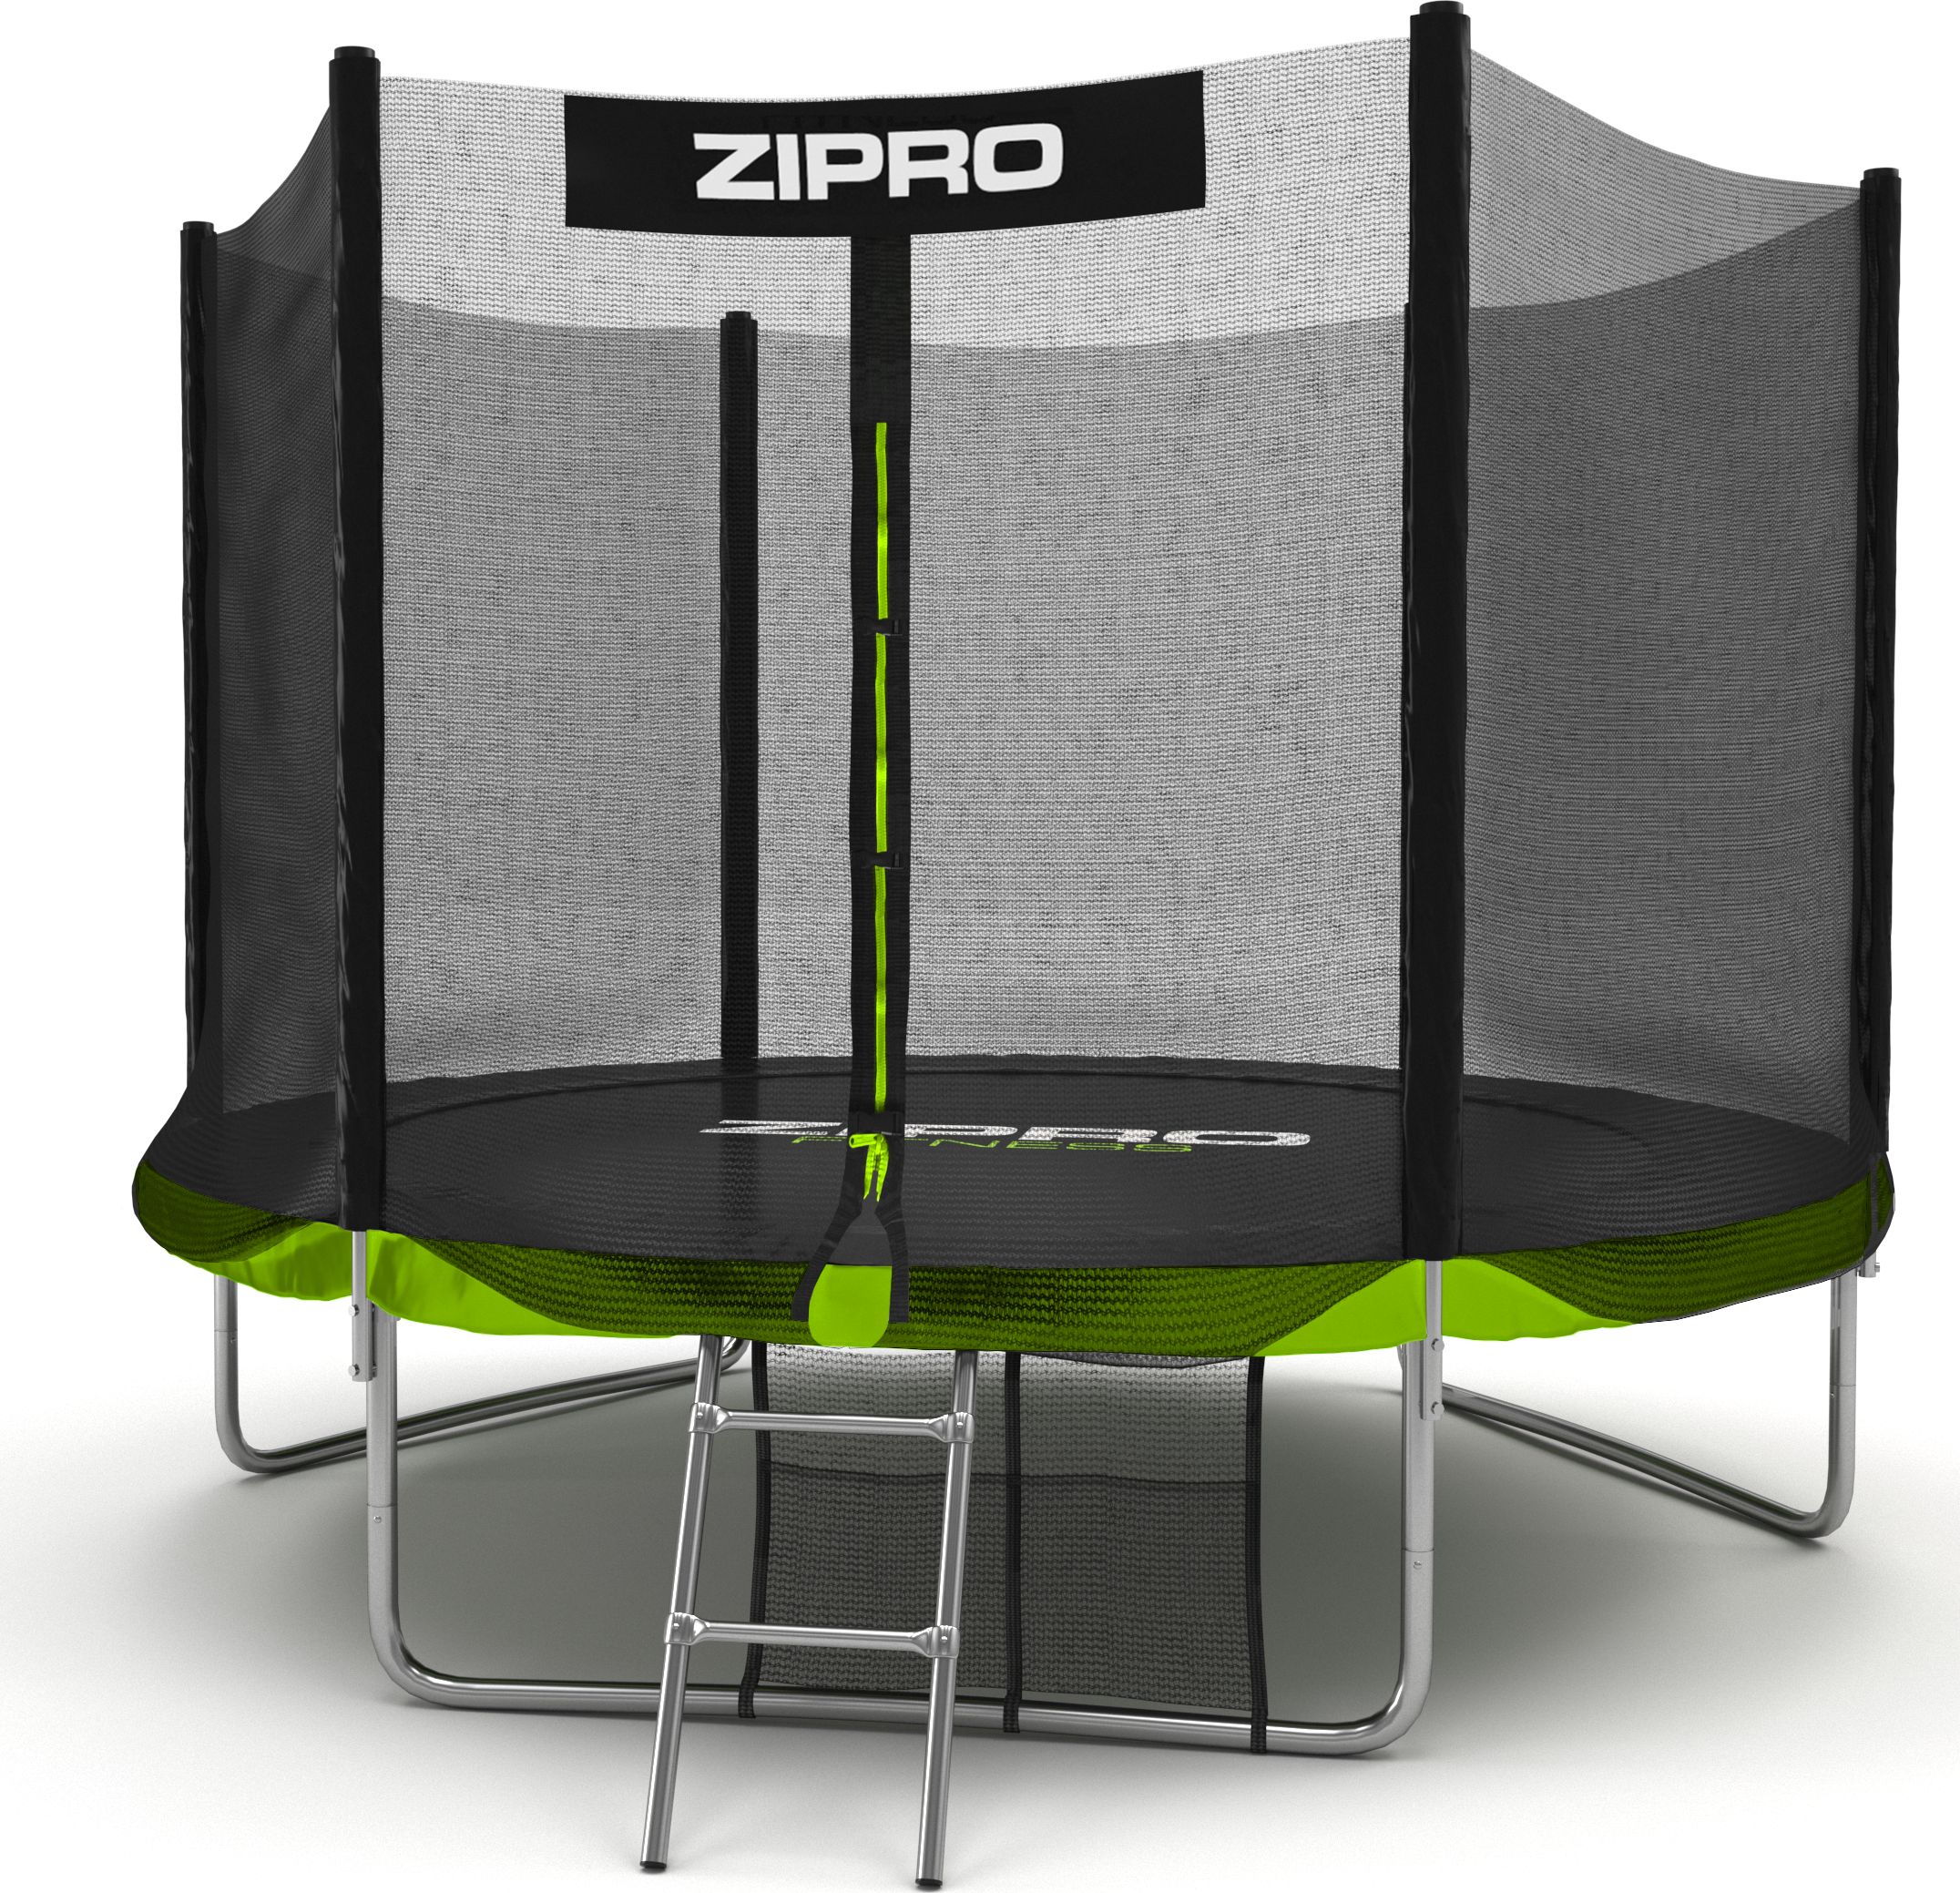 

Батут с защитной сеткой Zipro Jump PRO 8FT, 252 см (33333-44555), Зеленый + черный